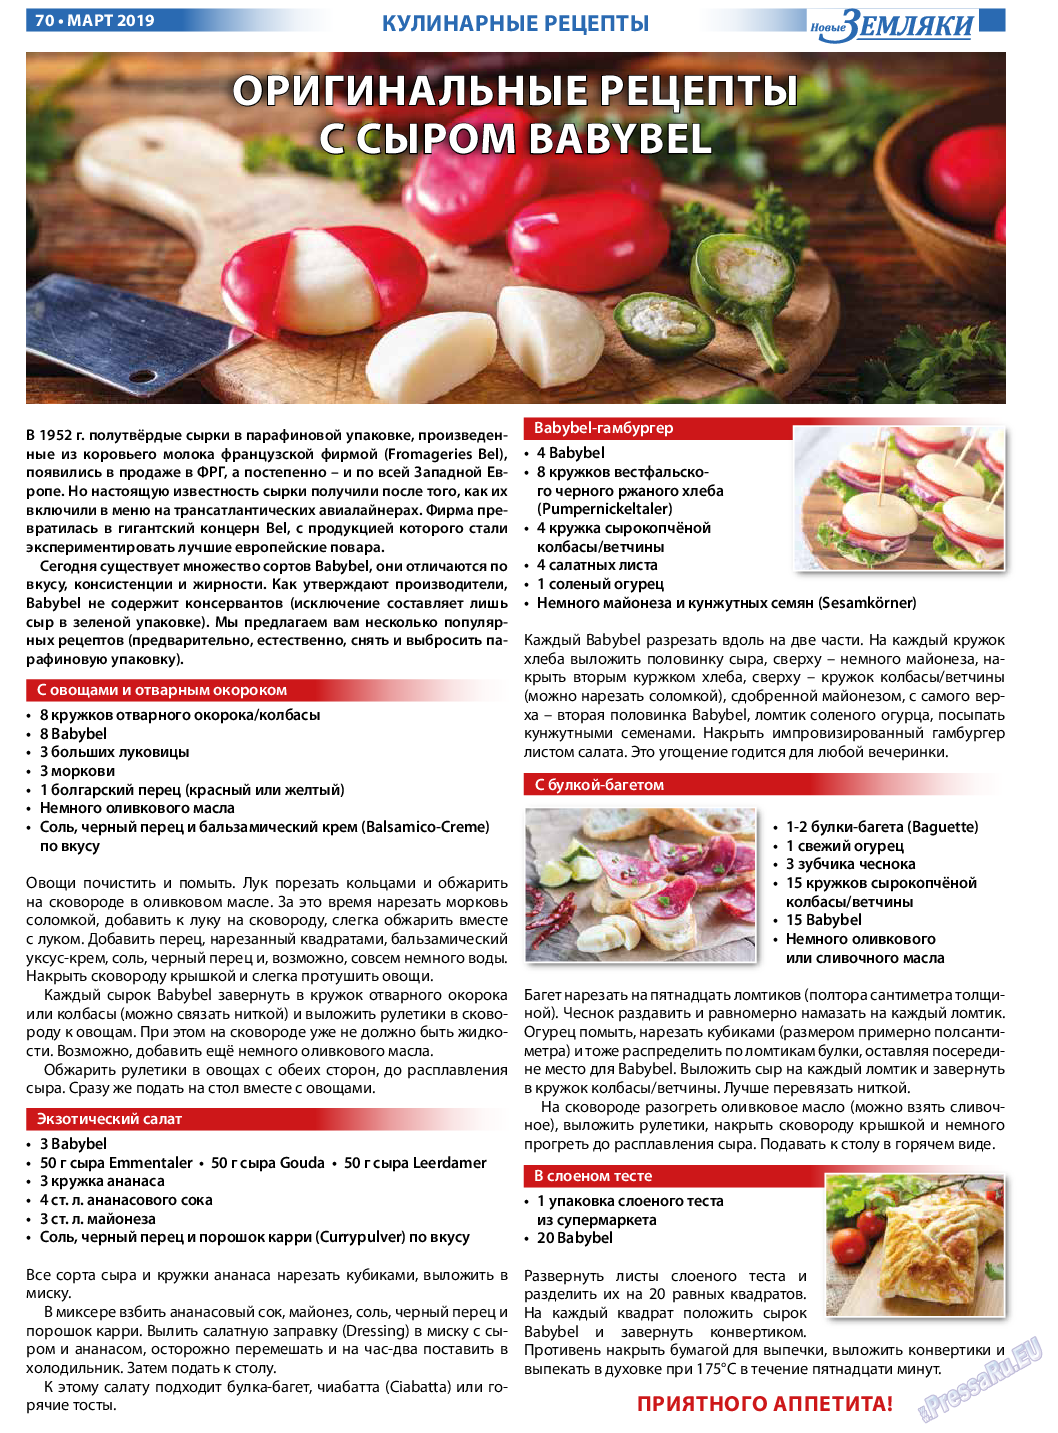 Новые Земляки, газета. 2019 №3 стр.70